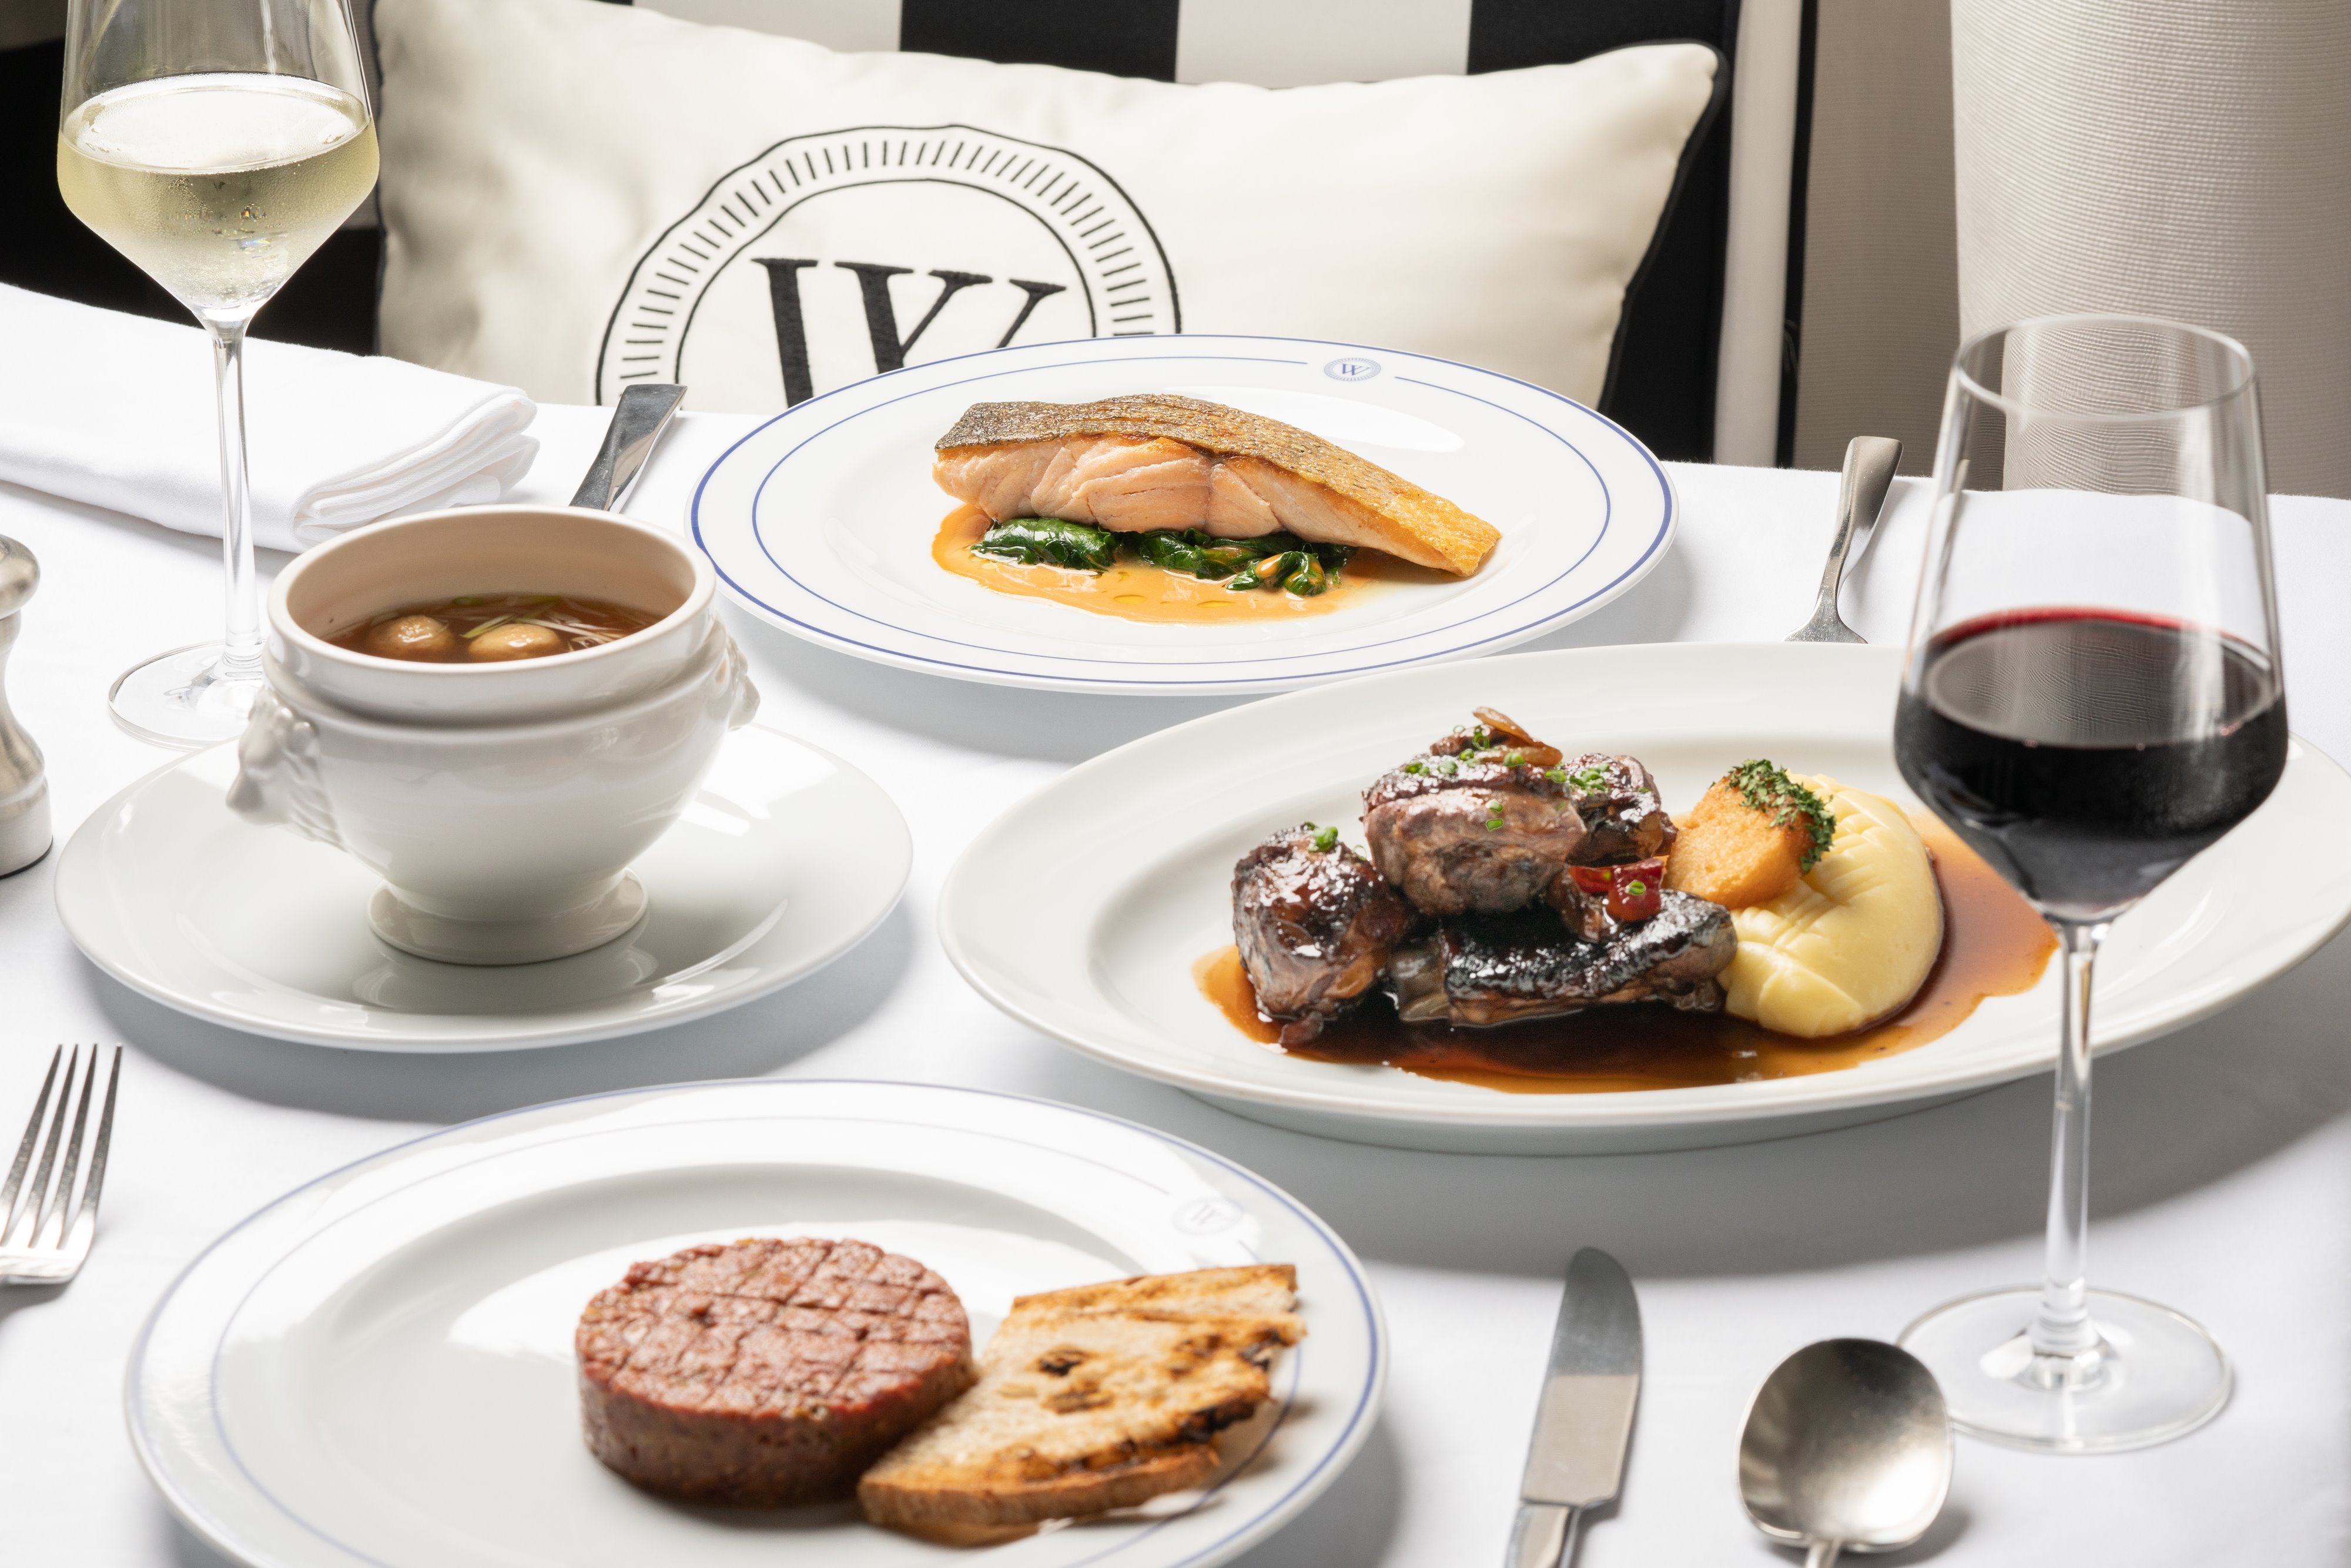 พบกับ Café Wolseley ร้านอาหารเก่าแก่จากประเทศอังกฤษ เปิดตัวครั้งแรกในประเทศไทย ณ โรงแรมอนันตรา สยาม กรุงเทพฯ